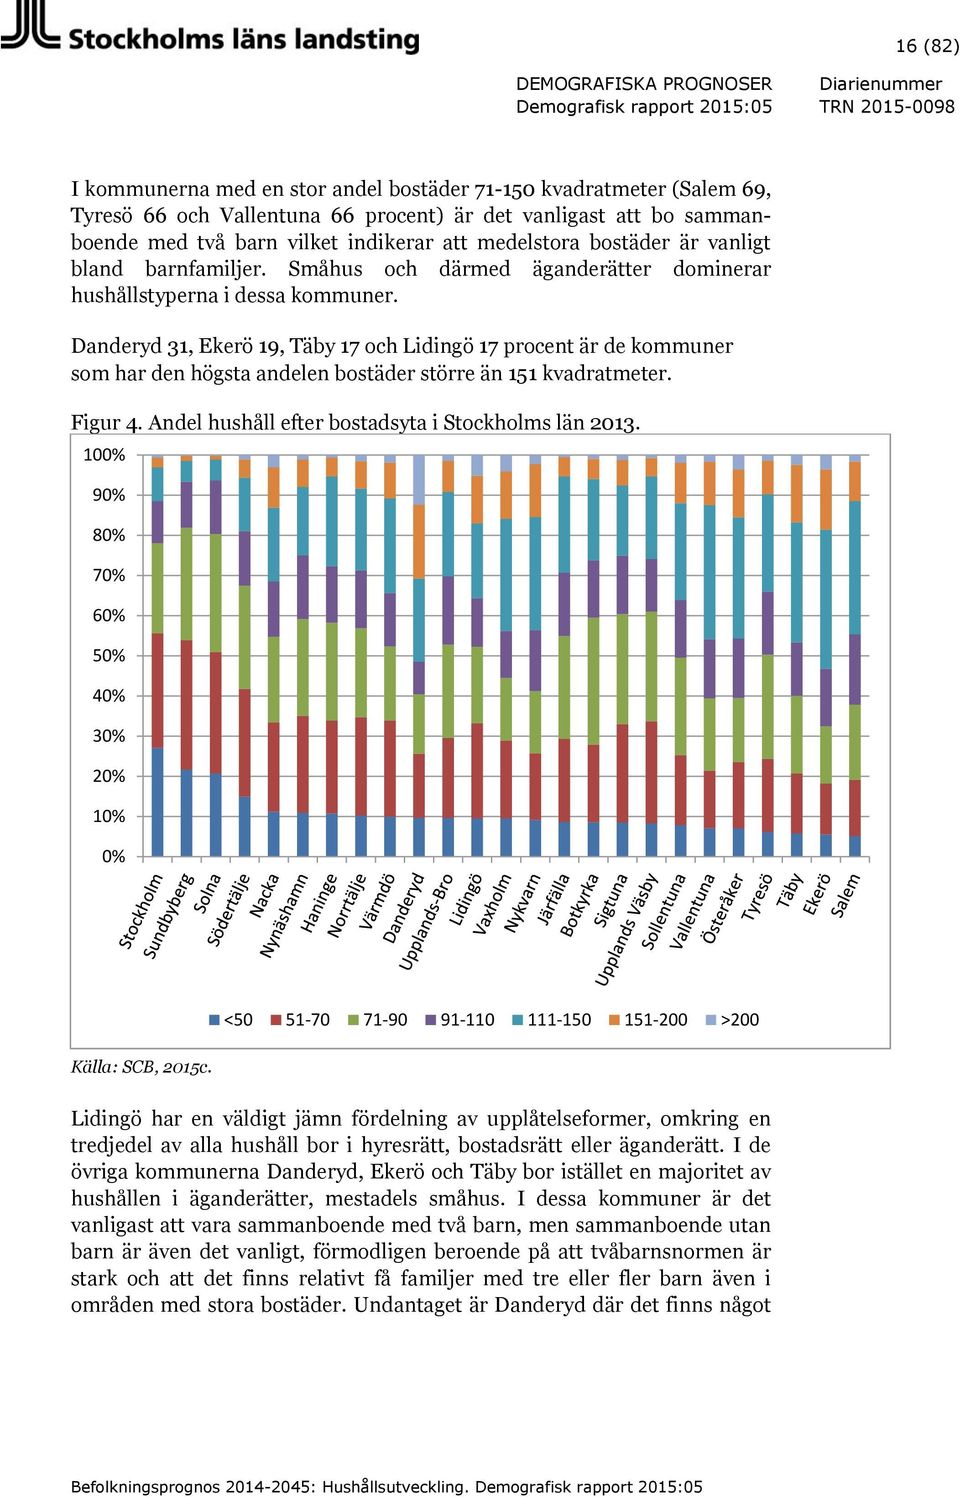 Danderyd 31, Ekerö 19, Täby 17 och Lidingö 17 procent är de kommuner som har den högsta andelen bostäder större än 151 kvadratmeter. Figur 4. Andel hushåll efter bostadsyta i Stockholms län 2013.